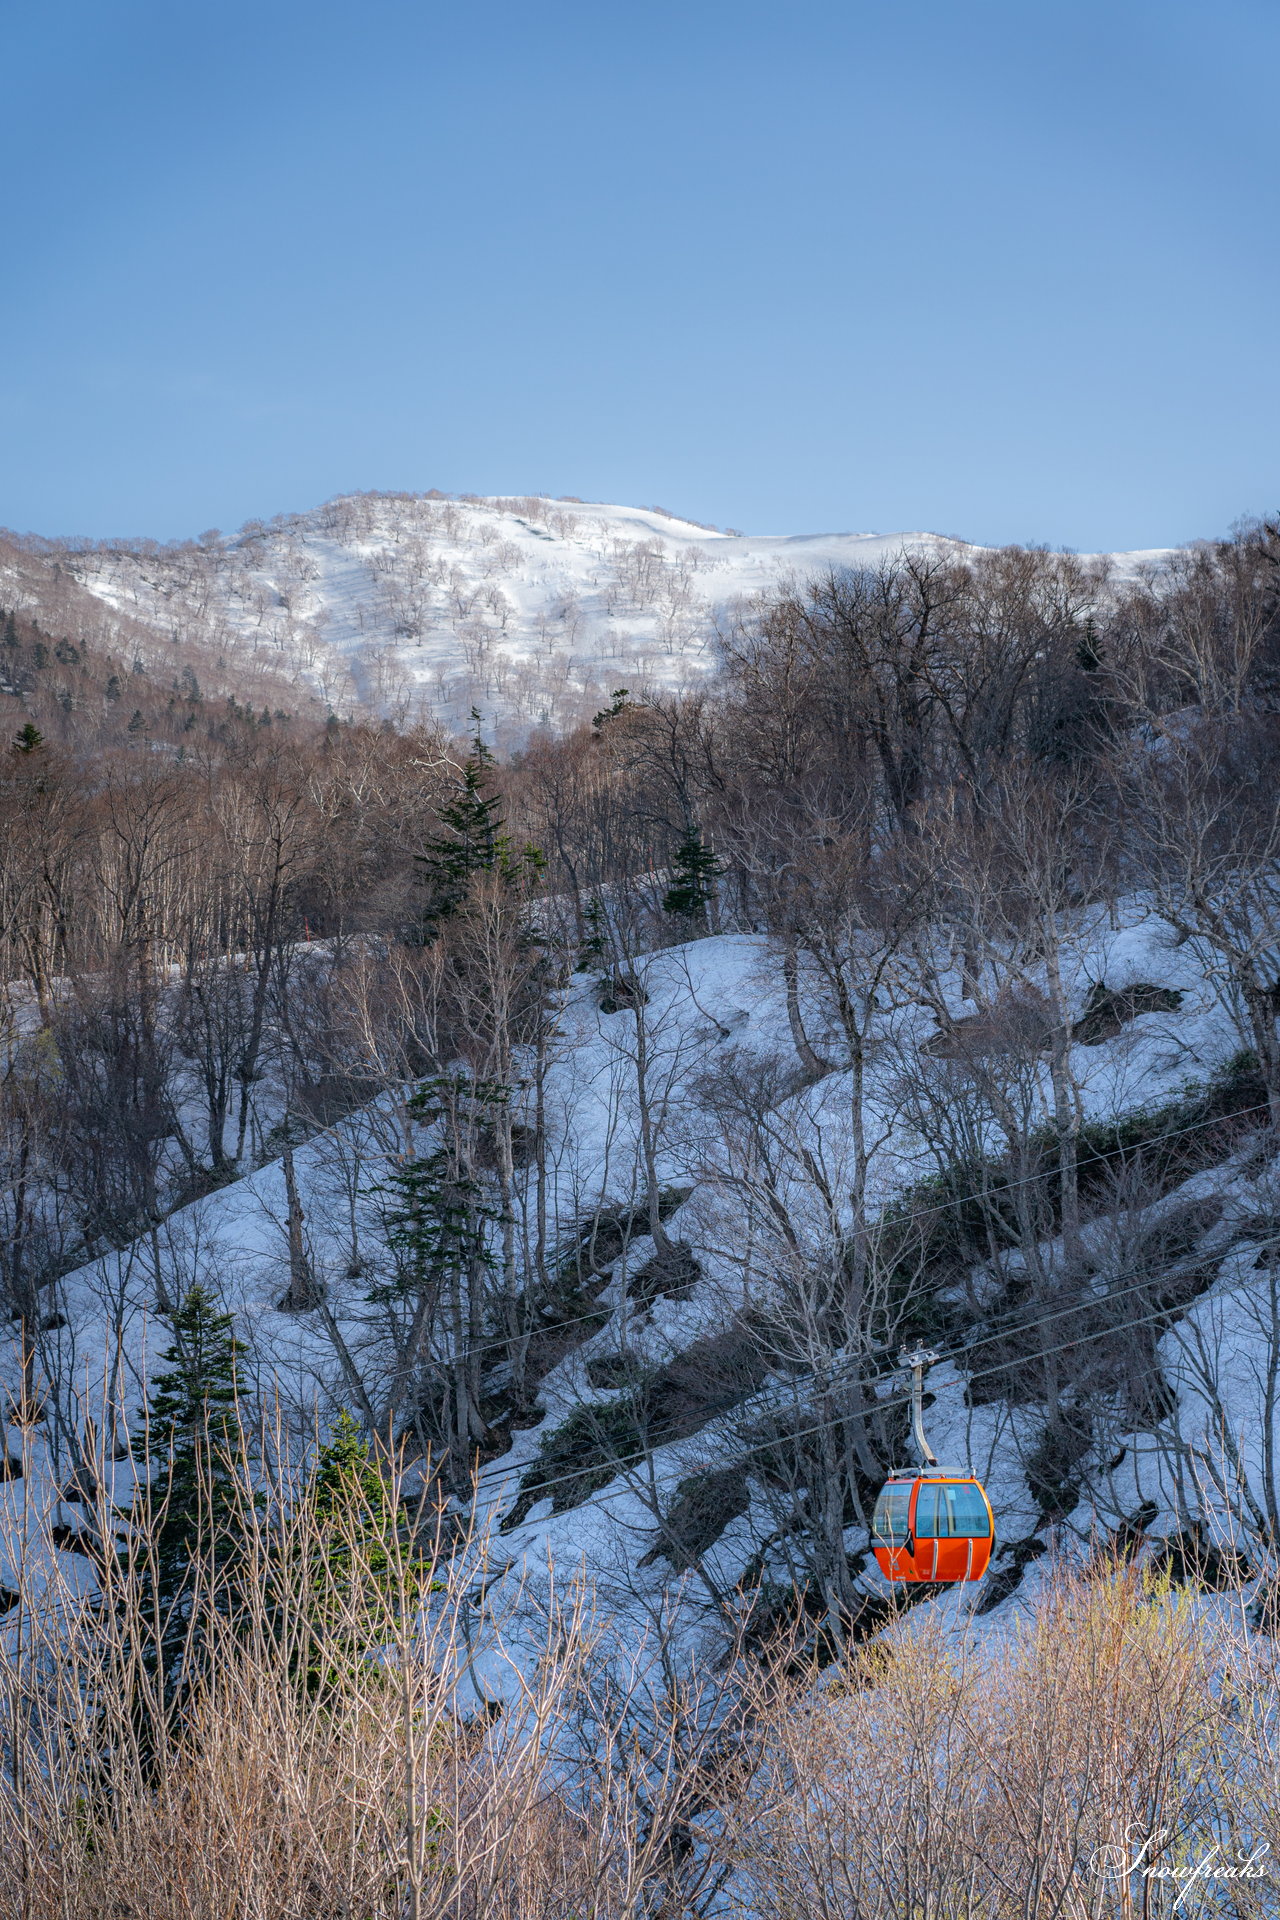 札幌国際スキー場　2020-2021ウィンターシーズン営業最後の週末。煌めく陽光を浴びながら、今季最後の撮影へ。SNOW Freaks 今季最後のレポートです(^^)/